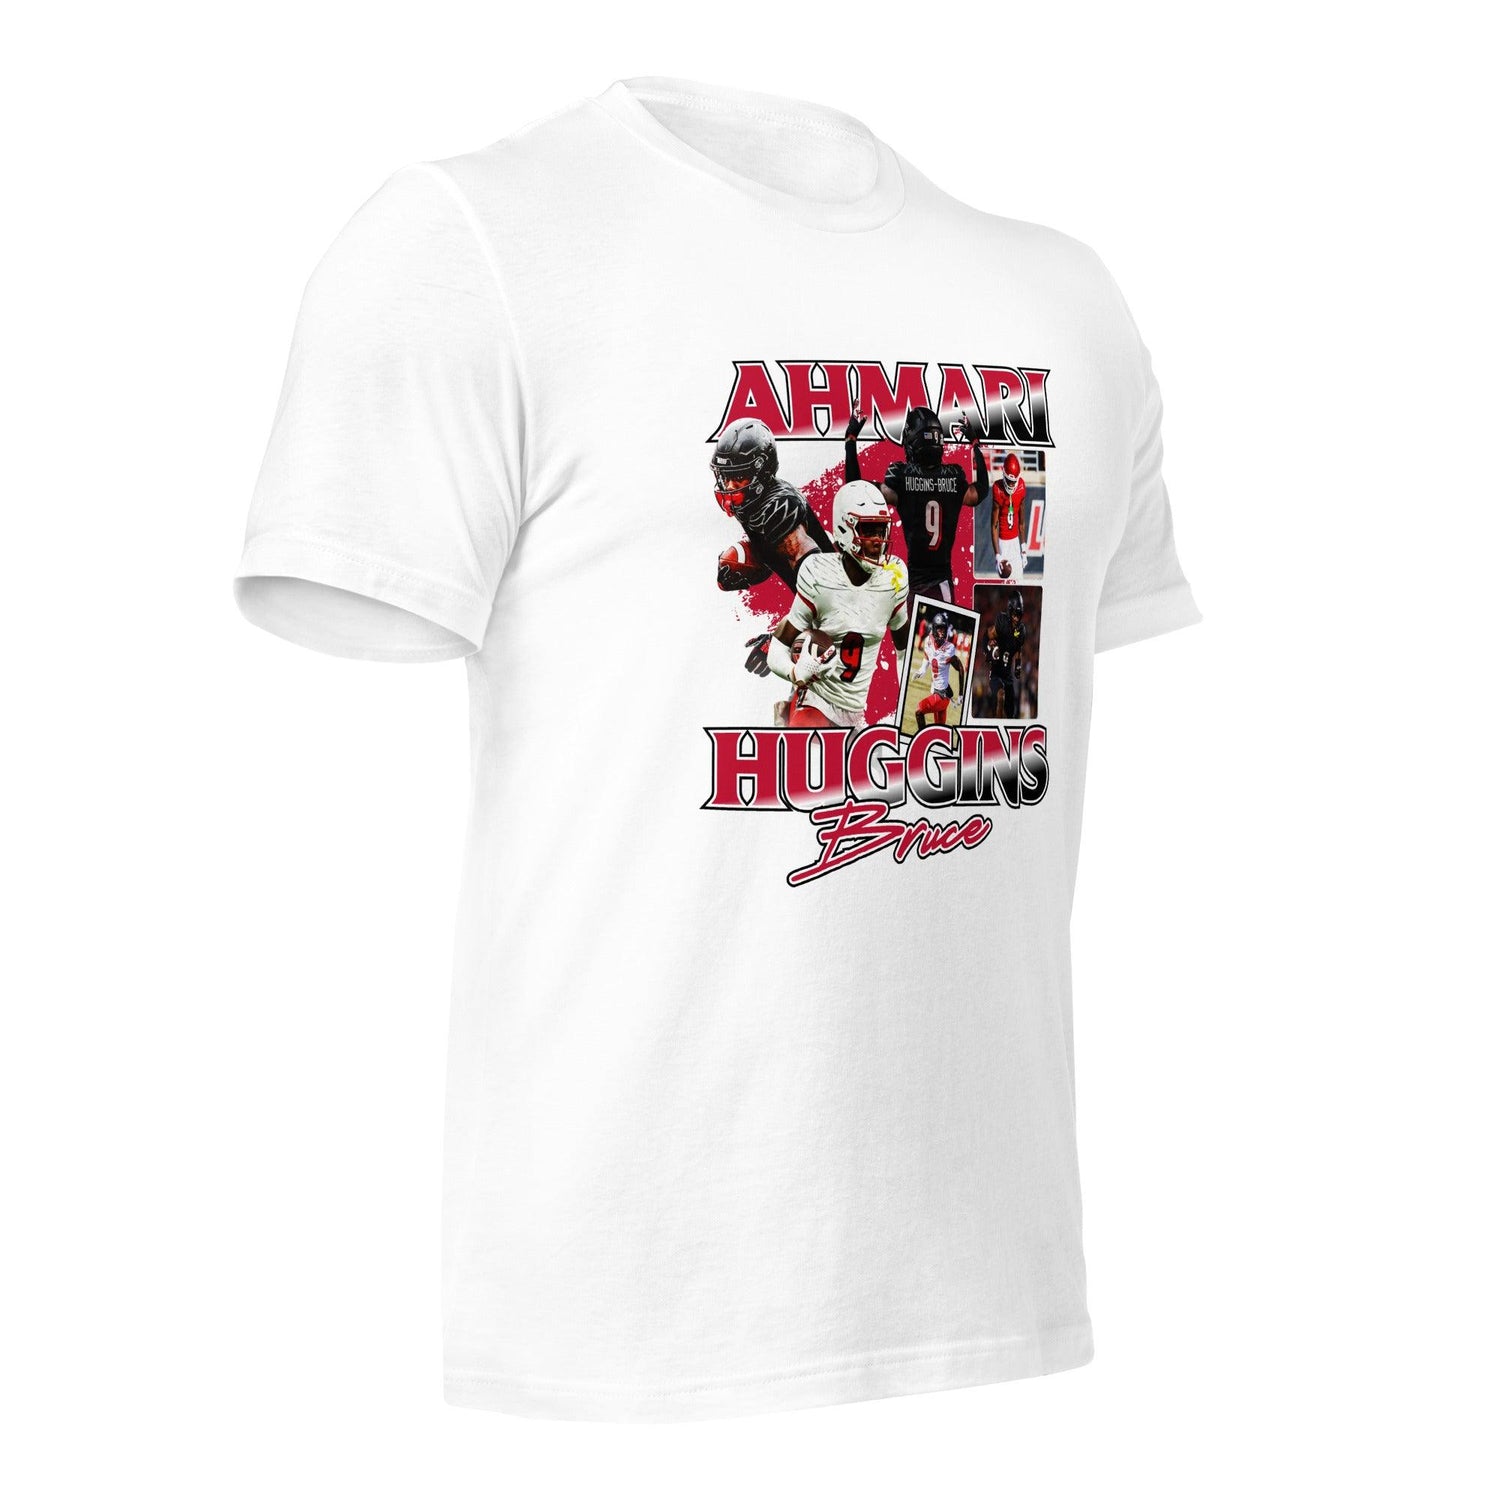 Ahmari Huggins "Vintage" t-shirt - Fan Arch